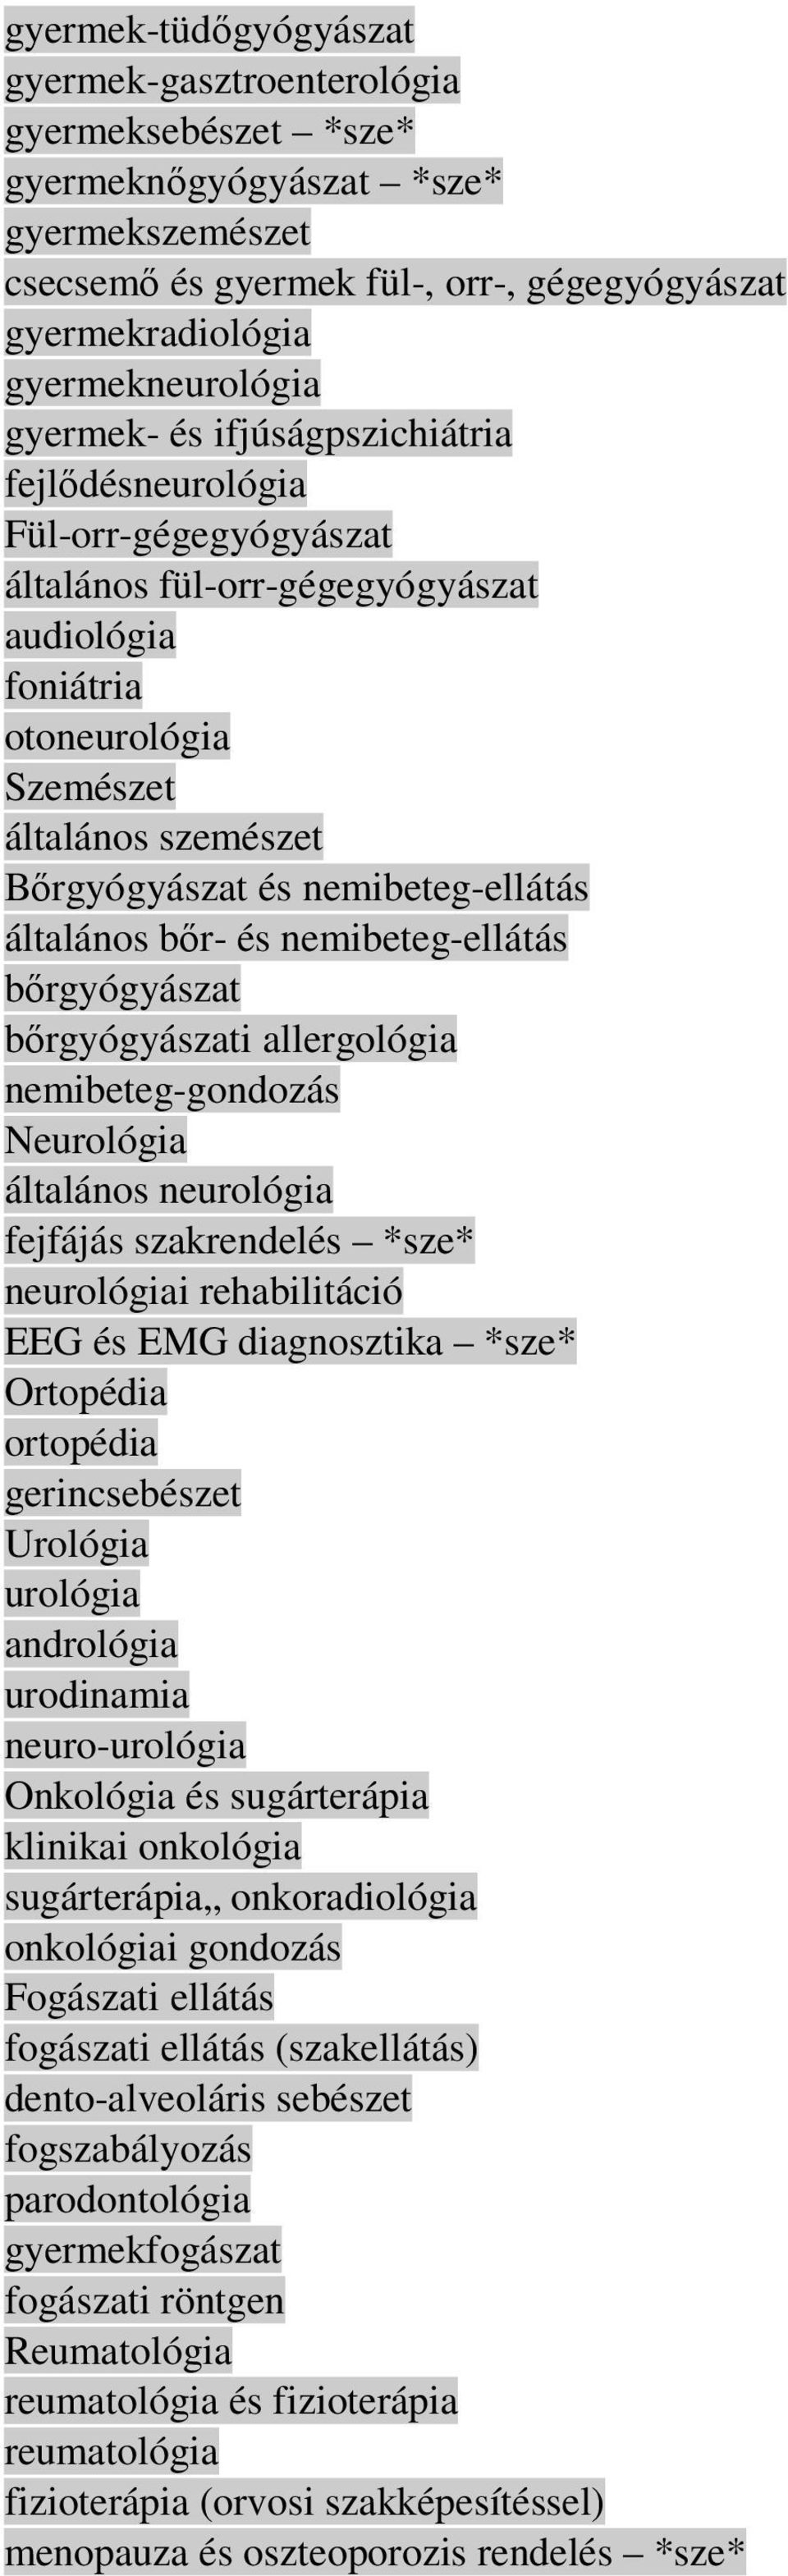 nemibeteg-ellátás általános bır- és nemibeteg-ellátás bırgyógyászat bırgyógyászati allergológia nemibeteg-gondozás Neurológia általános neurológia fejfájás szakrendelés *sze* neurológiai